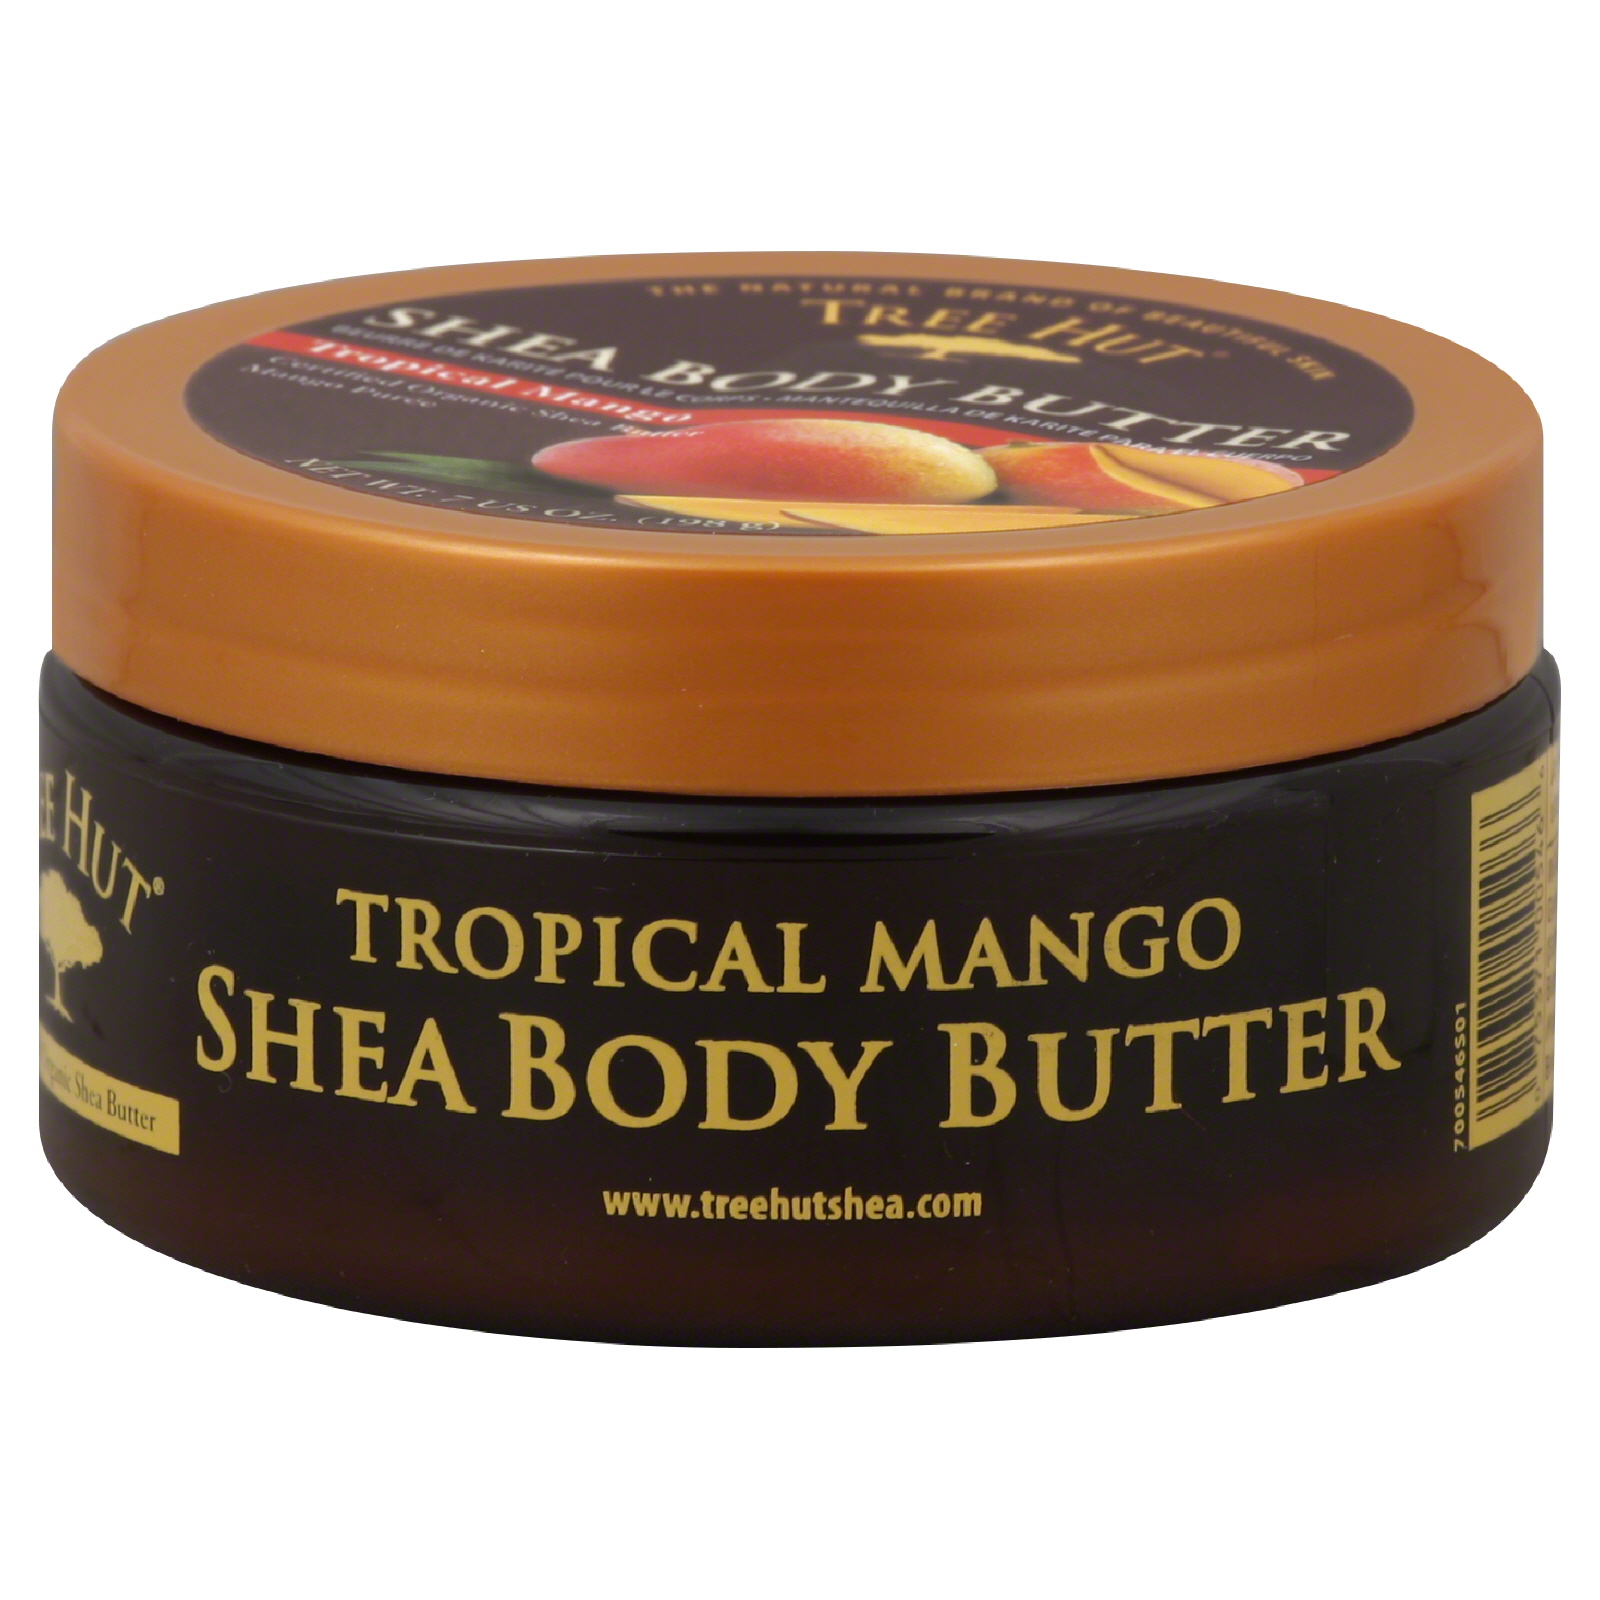 Tree Hut Shea Body Butter, Tropical Mango, 7 oz